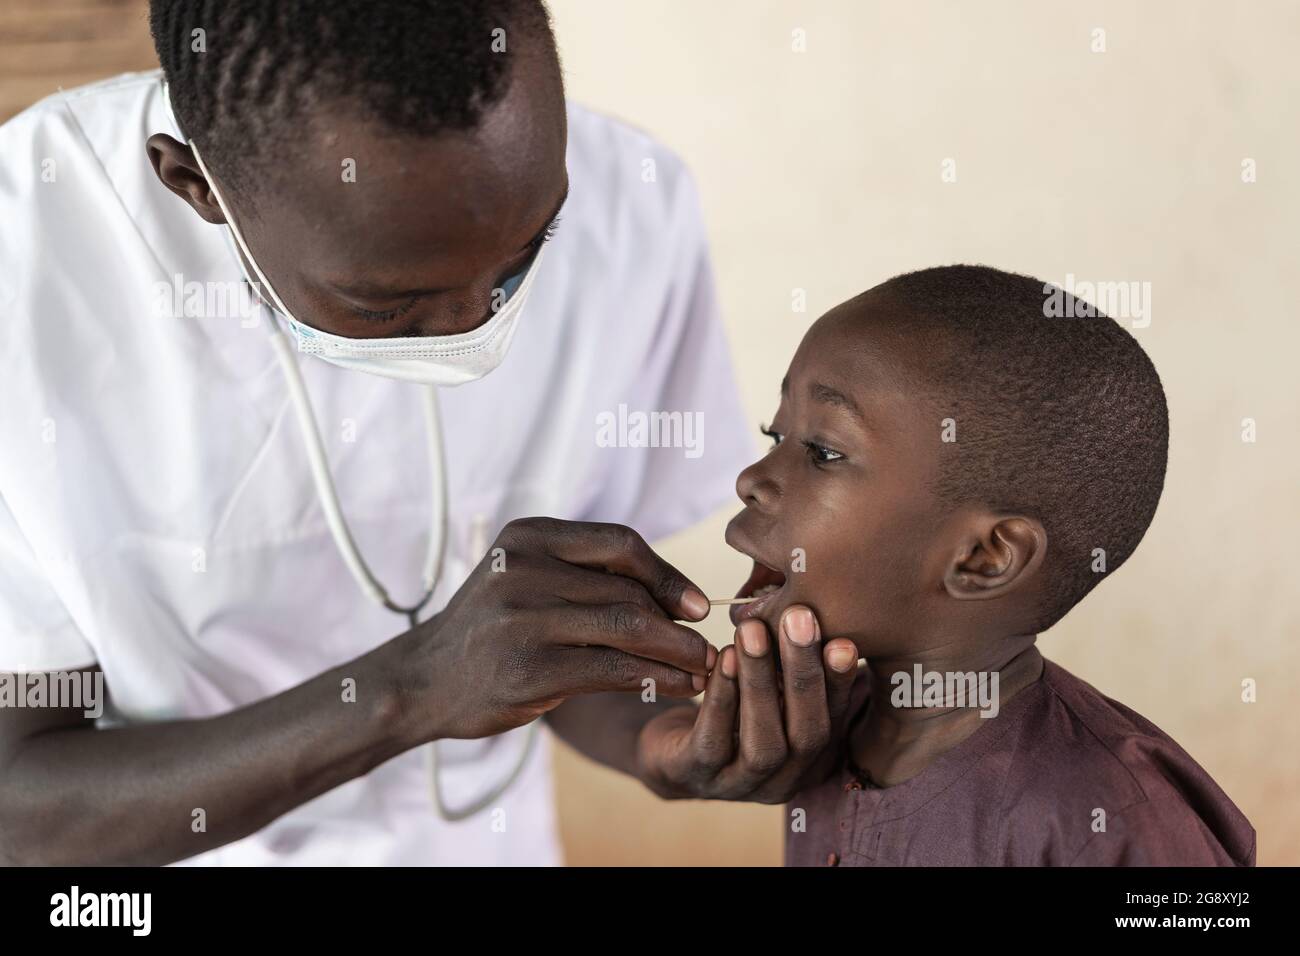 Dans cette image, un petit garçon africain courageux collabore avec son infirmière noire lors d'un examen par écouvillon buccal pour détecter le virus corona Banque D'Images